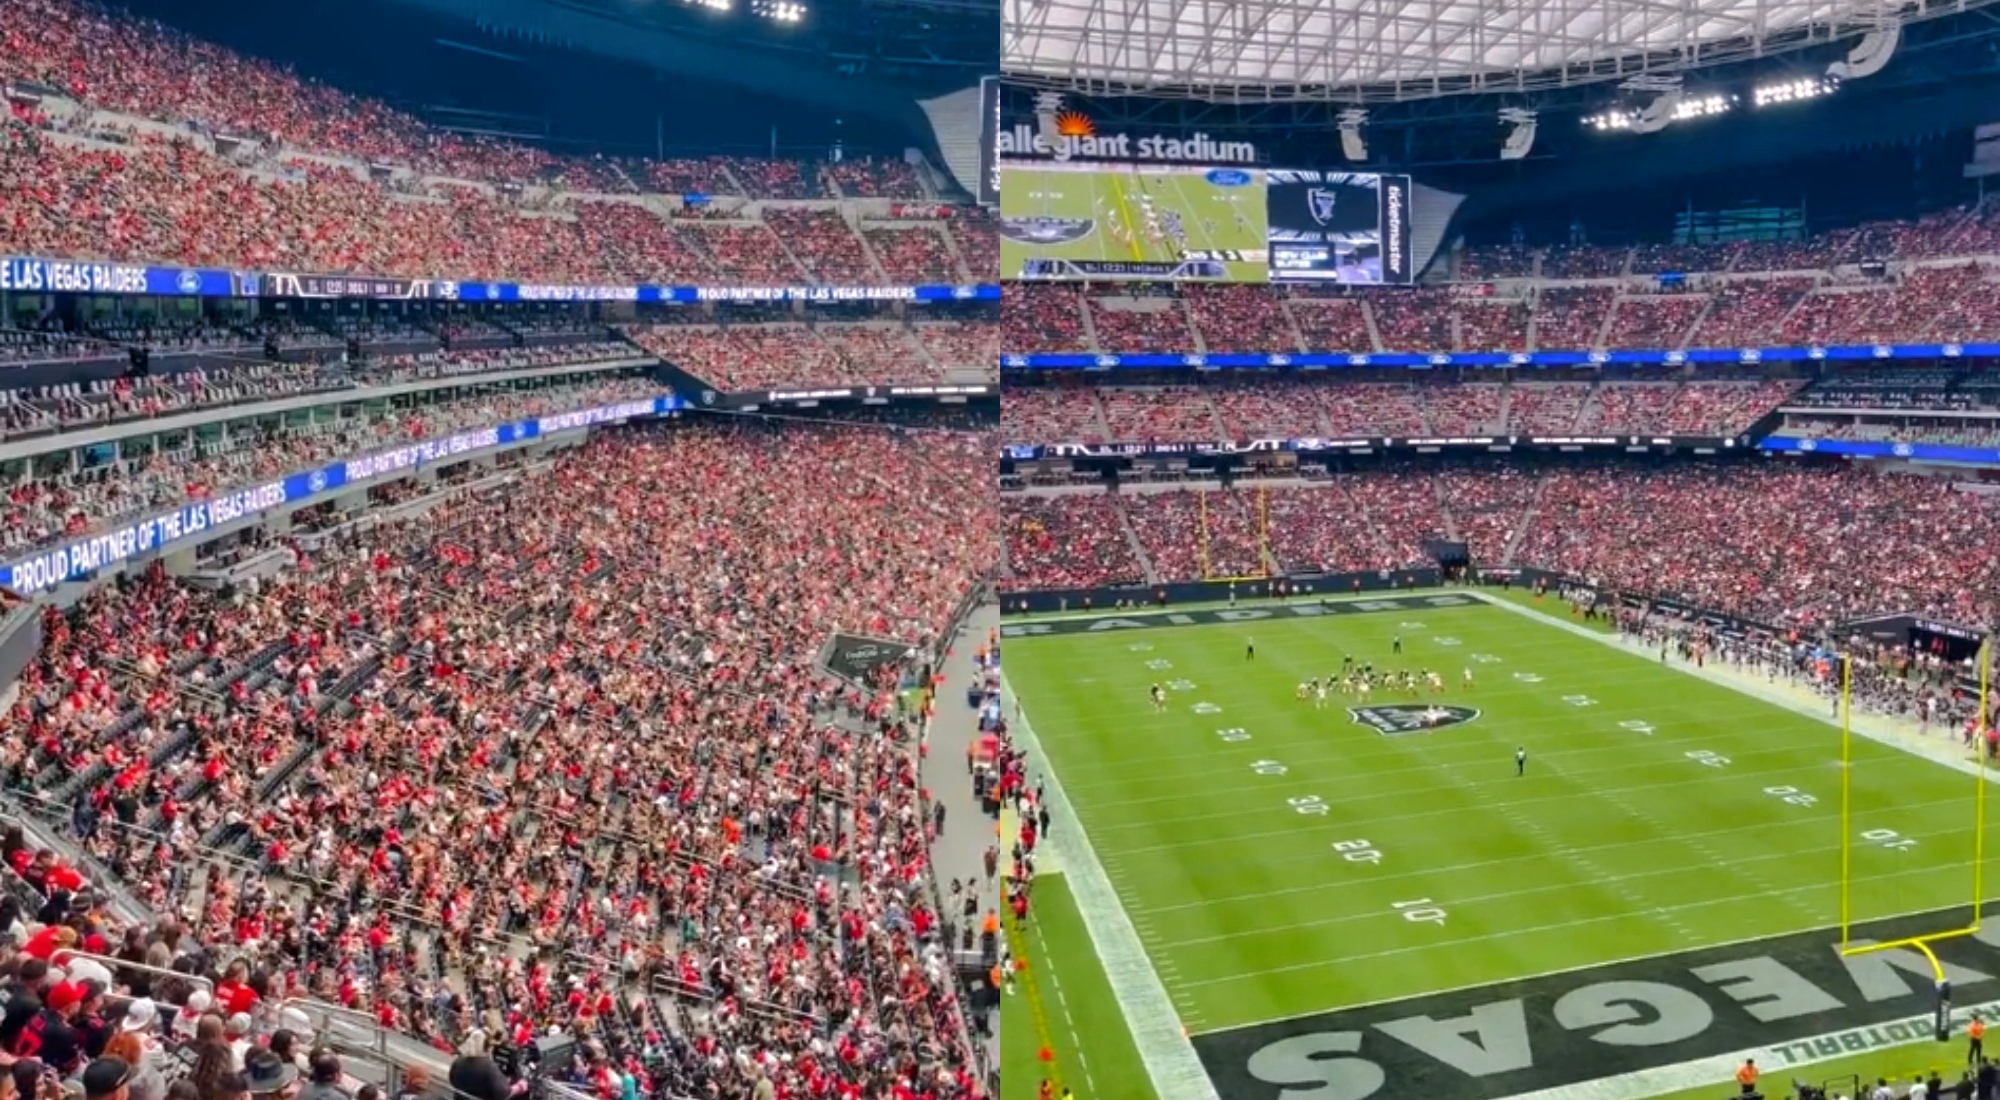 49ers Fans Take Over Allegiant Stadium For Game vs. Raiders